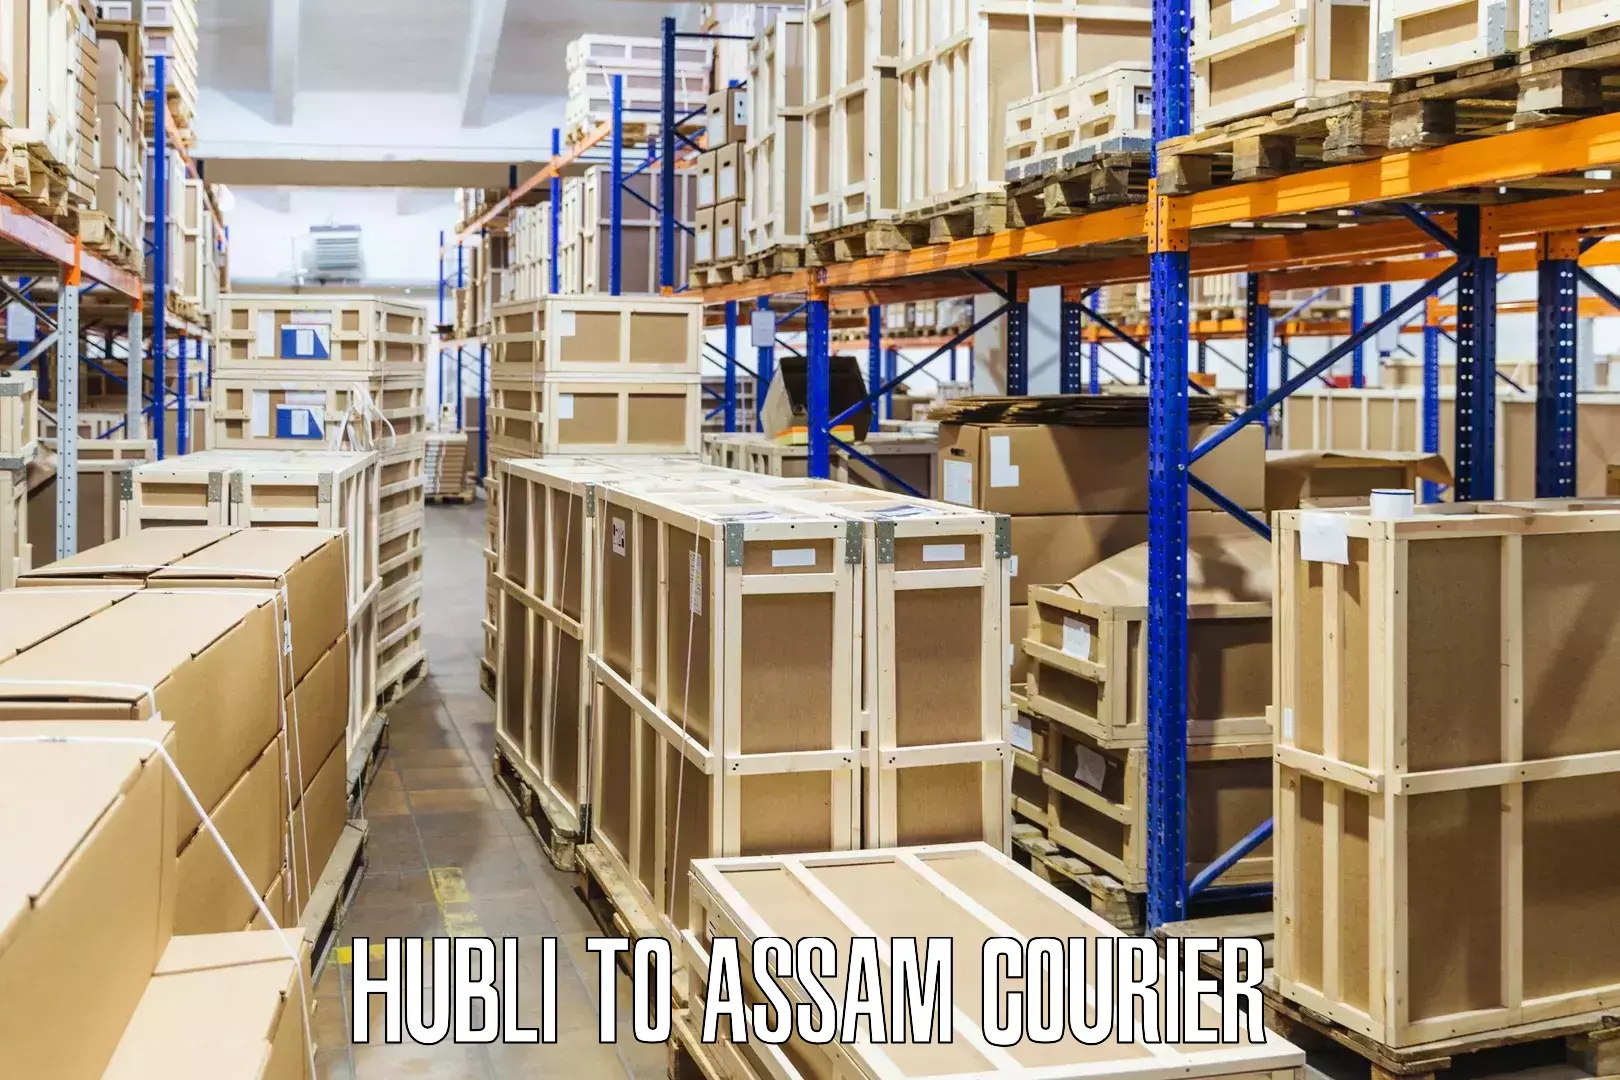 Customer-centric shipping Hubli to Assam